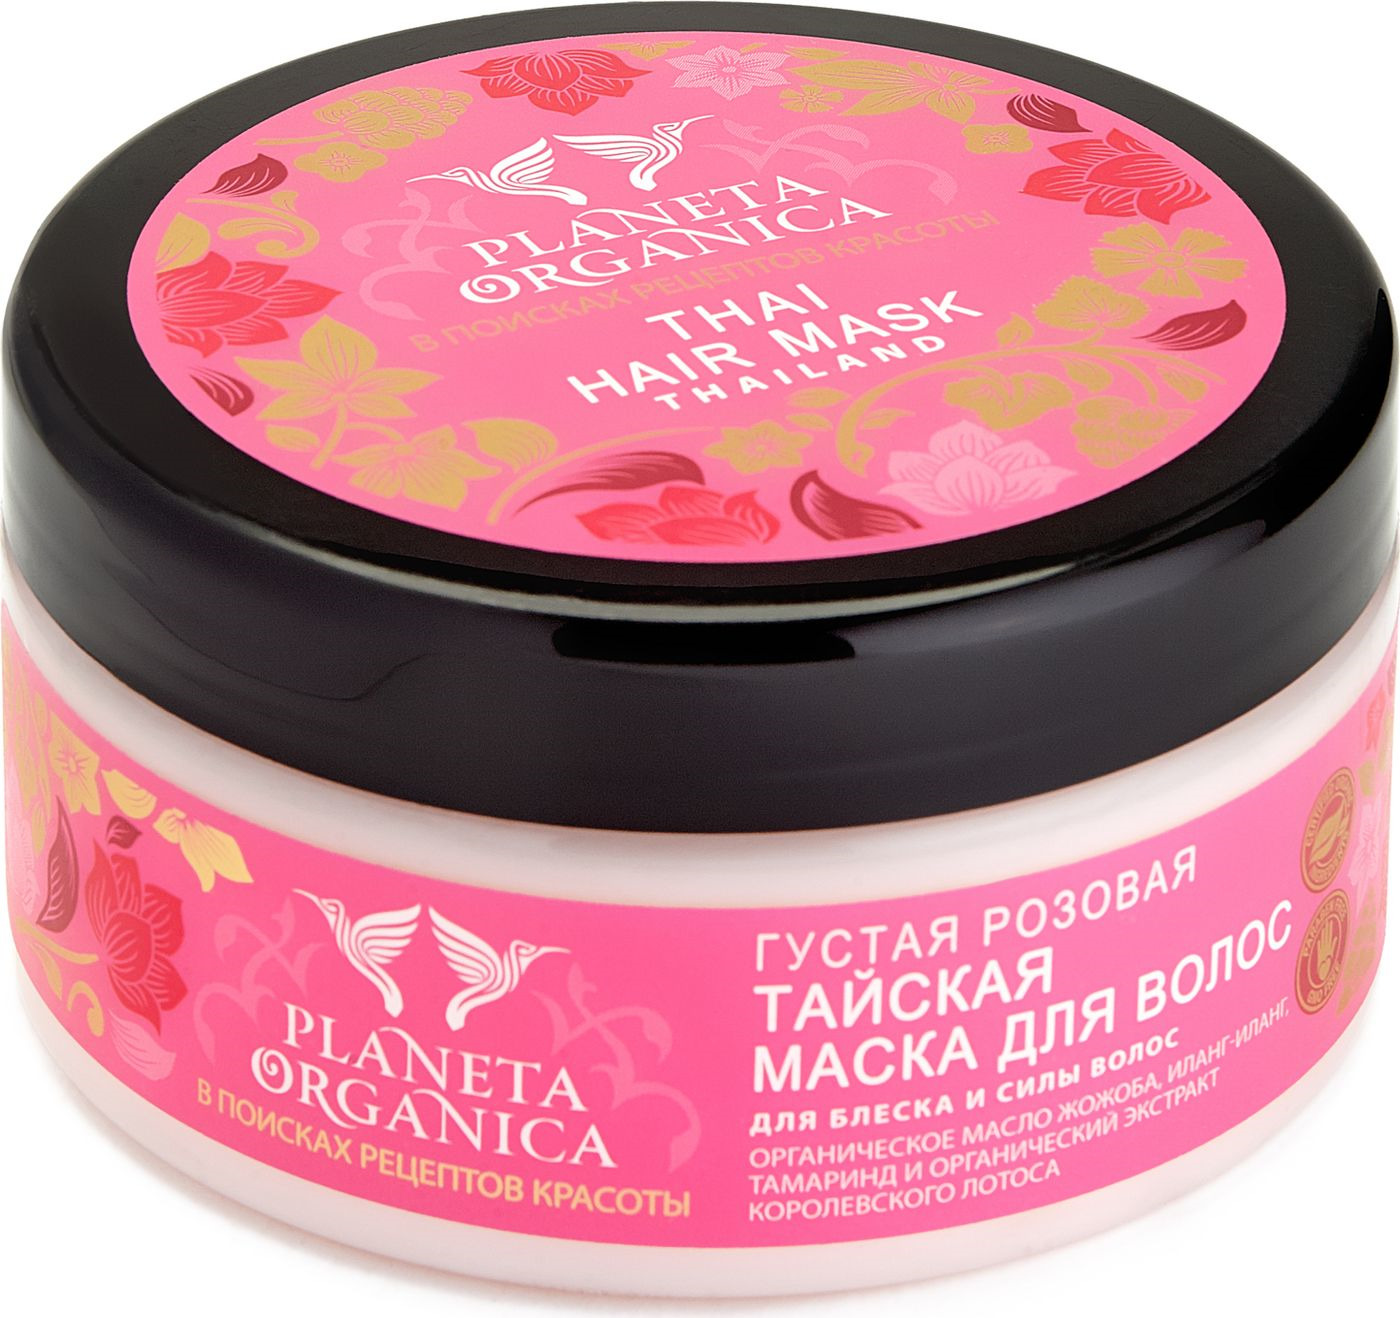 Planeta organica маска для волос густая розовая тайская для блеска и силы волос